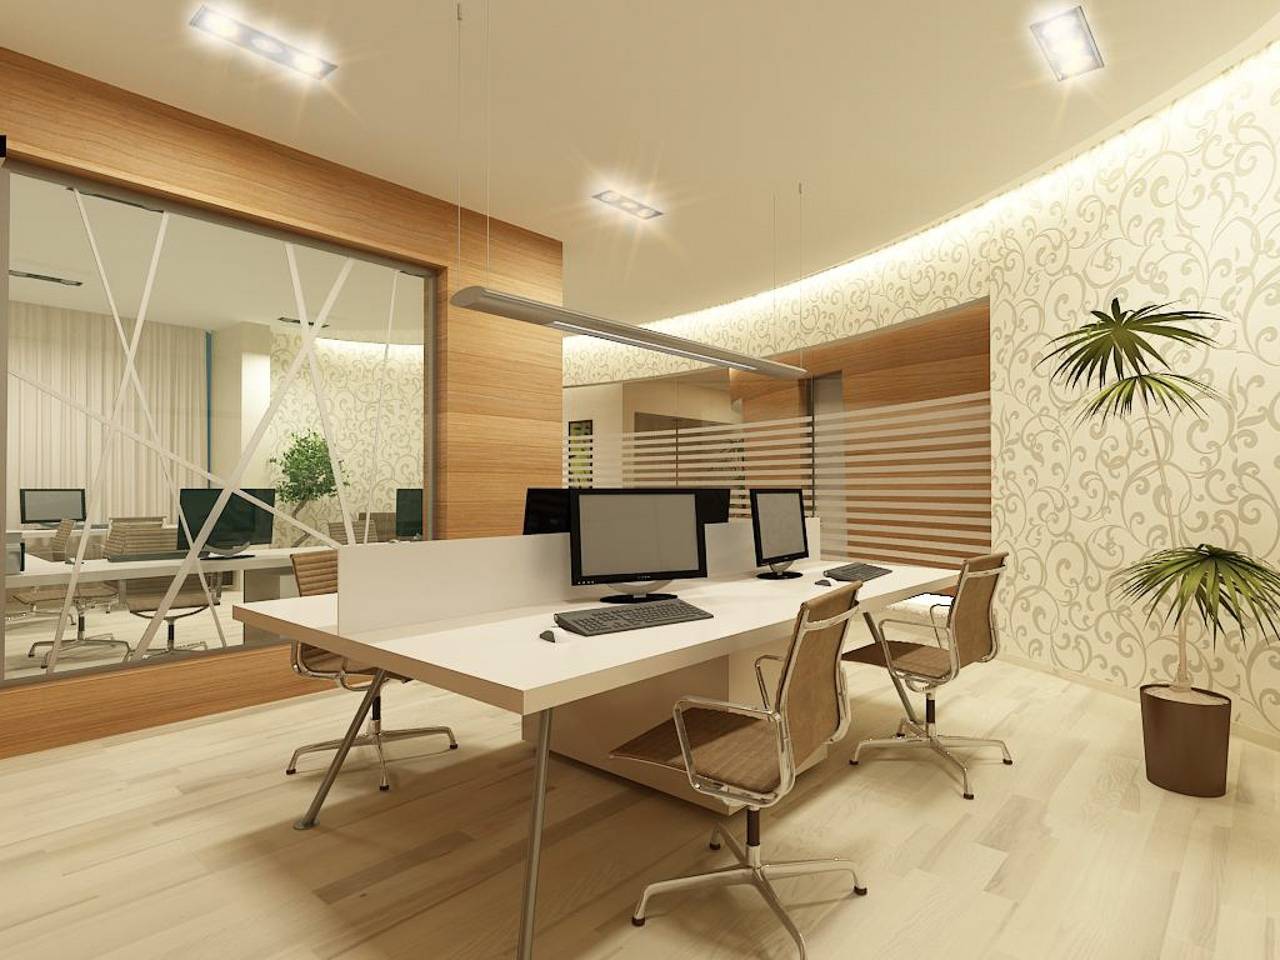 На примере решения по дизайну офисного помещения